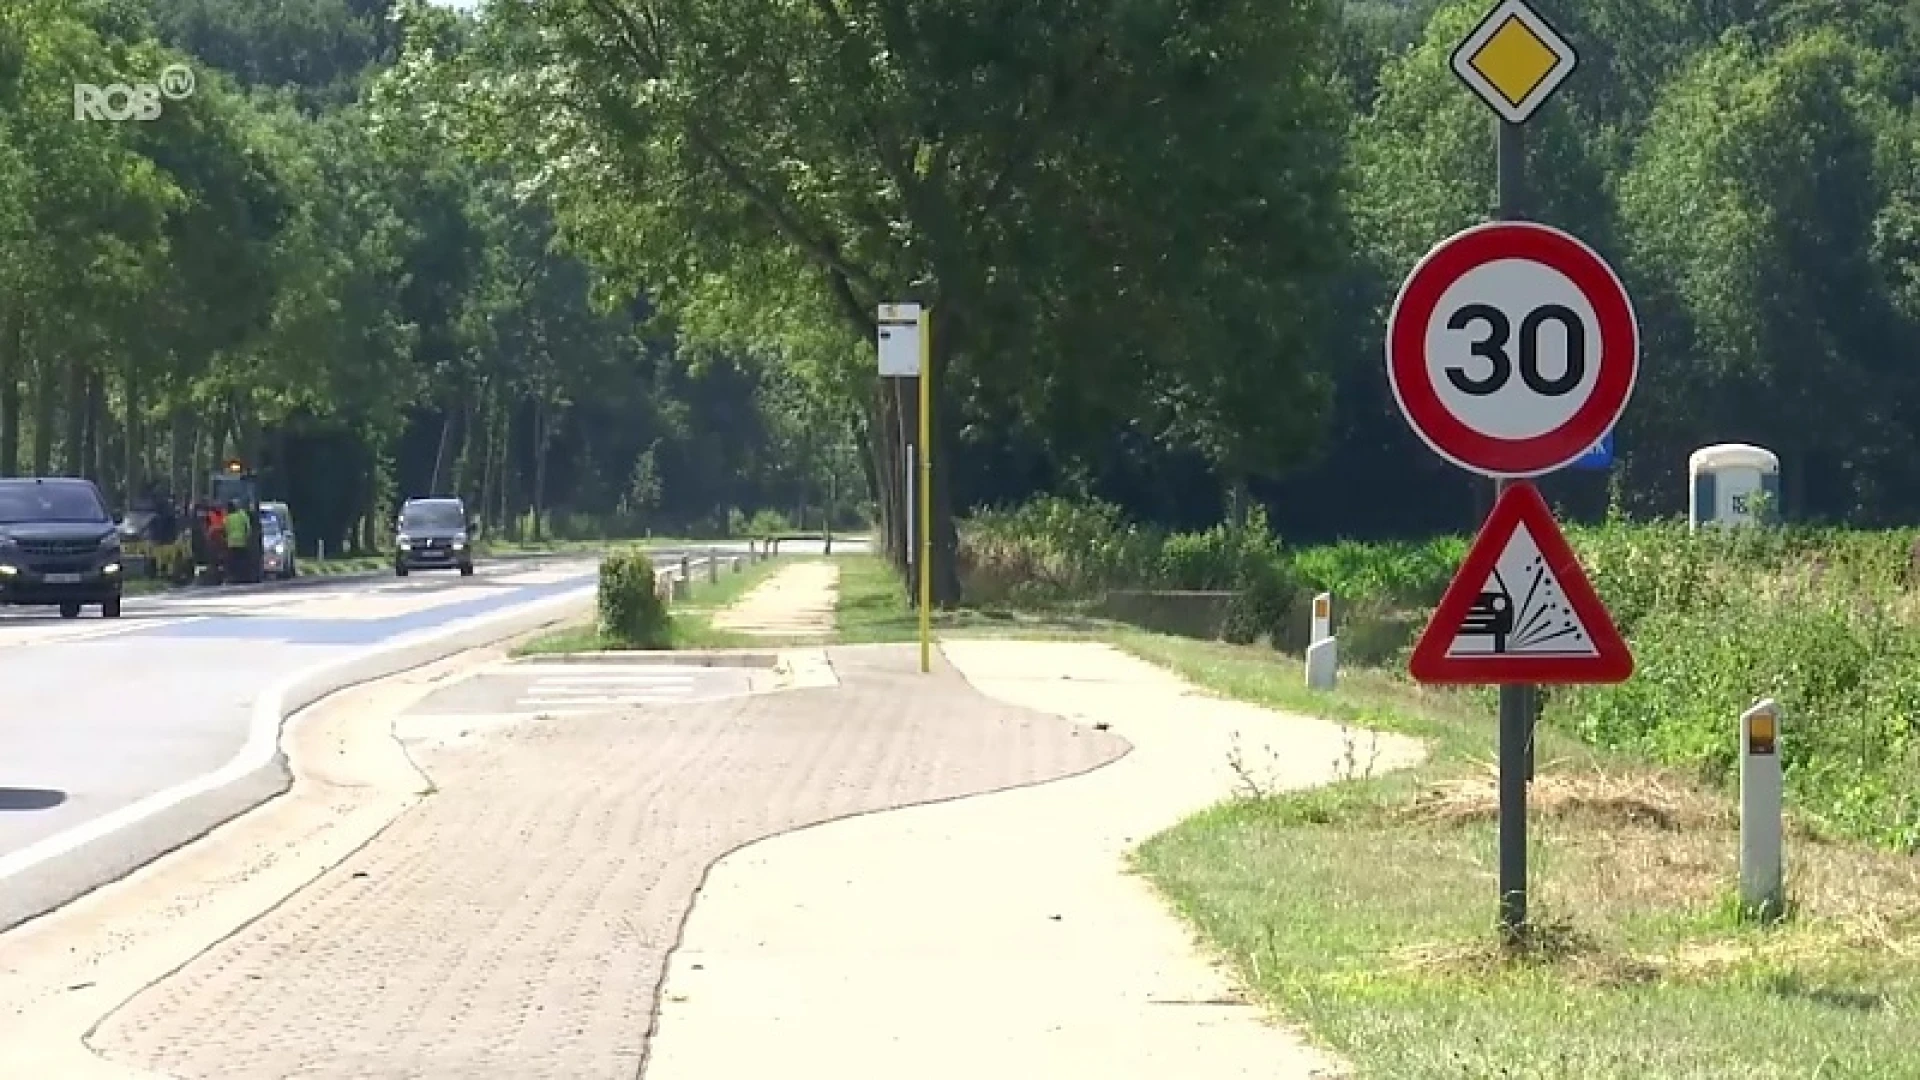 Ondanks dodelijk ongeval: chauffeurs respecteren snelheidslimiet op Rijksweg niet